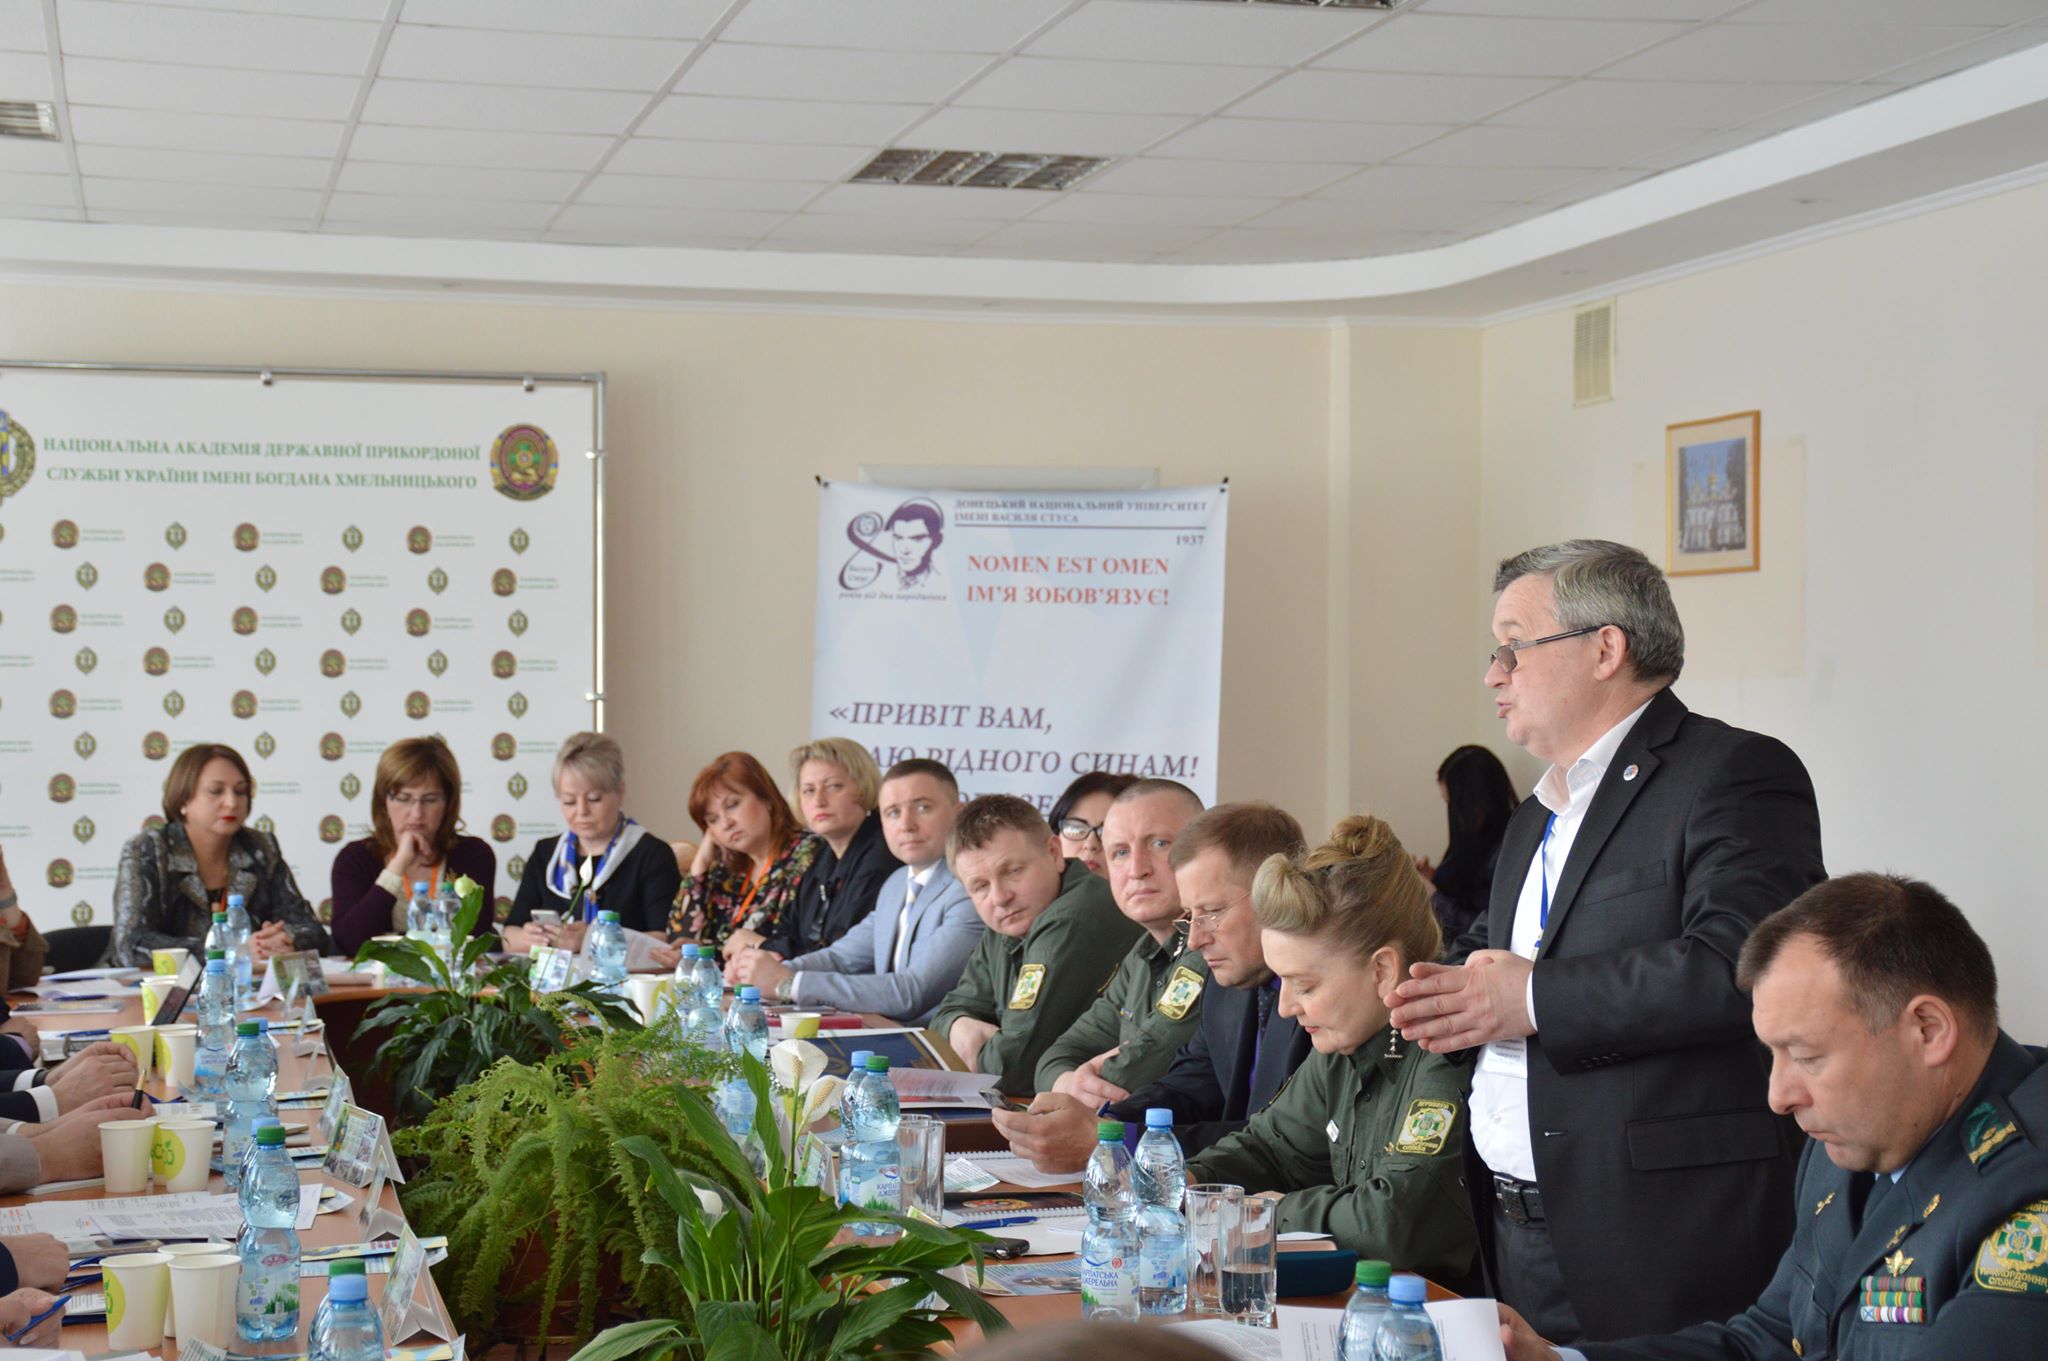 Сьогодні, 23 квітня у Донецькому національному університет імені Василя Стуса відбулась Науково-практична конференція. Правники говорили...